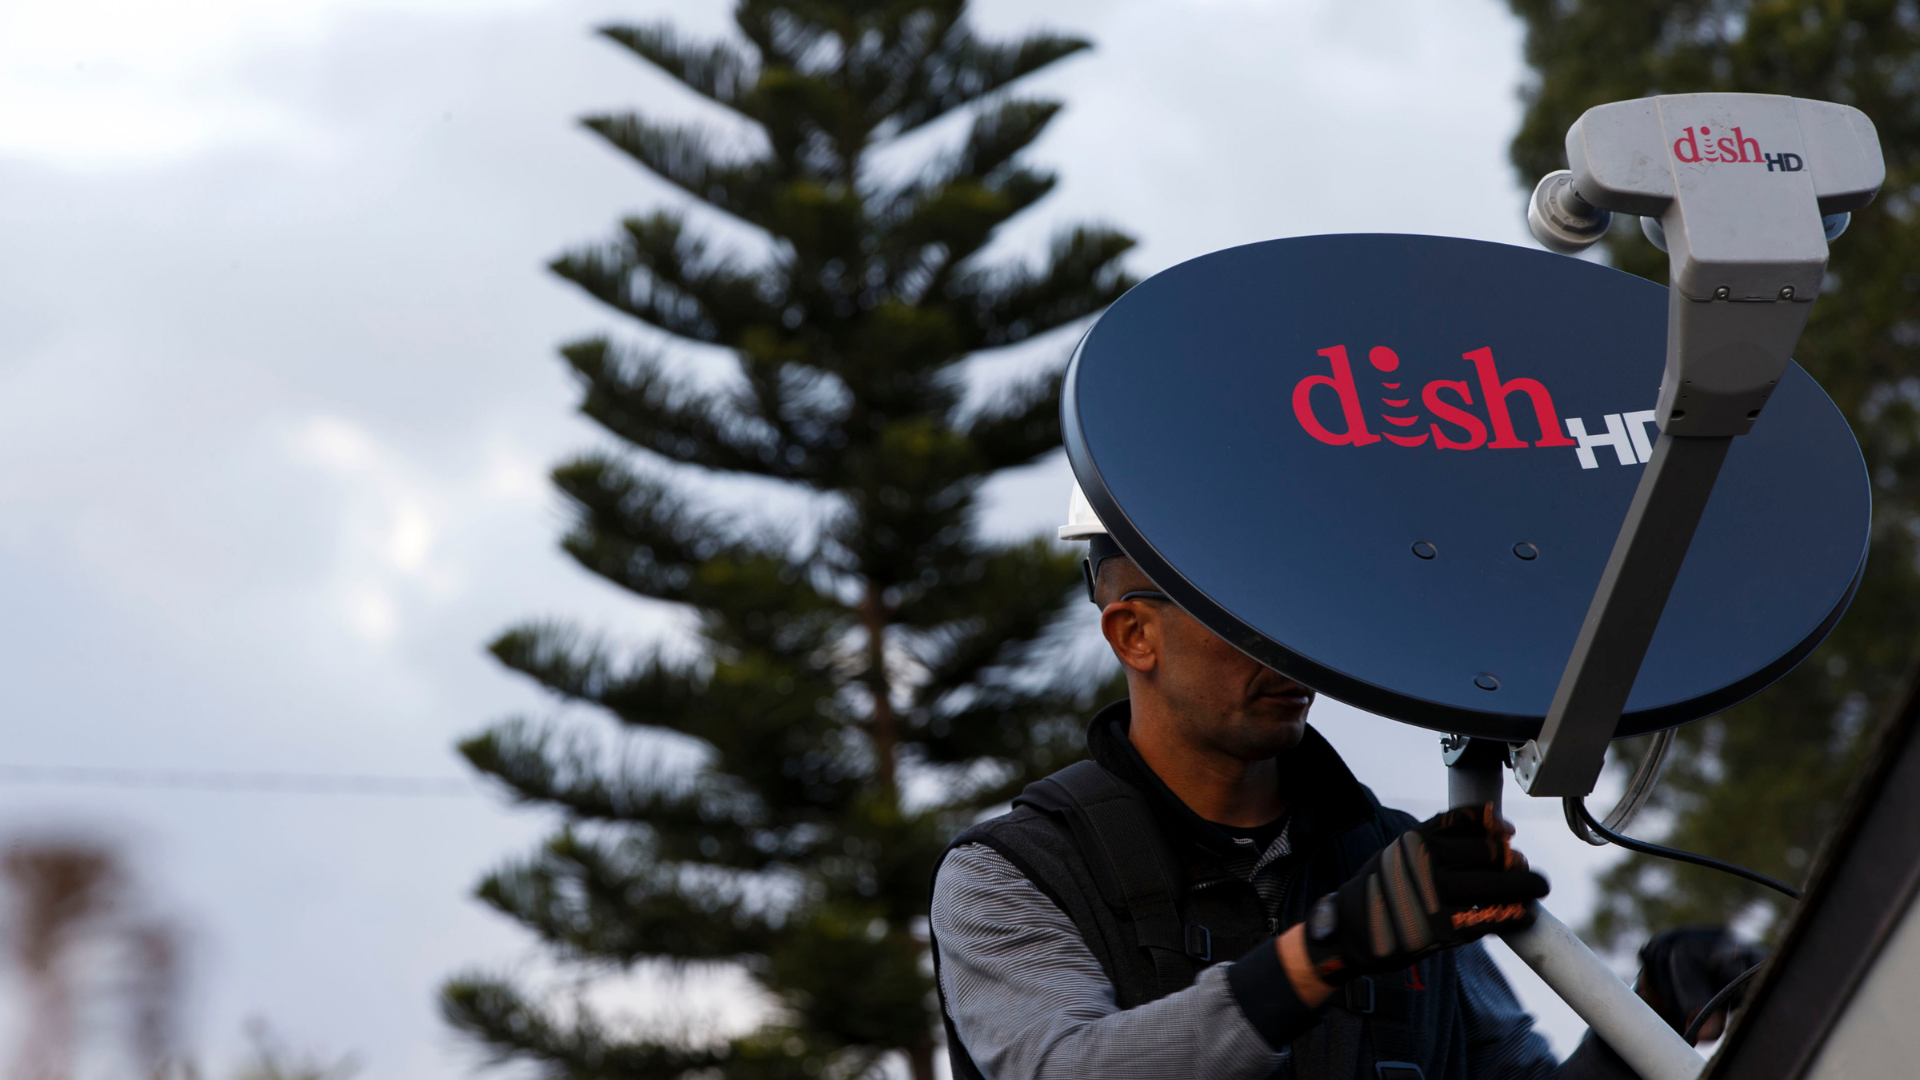 Dish Network подтвердила, что за многодневным отключением сетей компании стоит вымогательское ПО